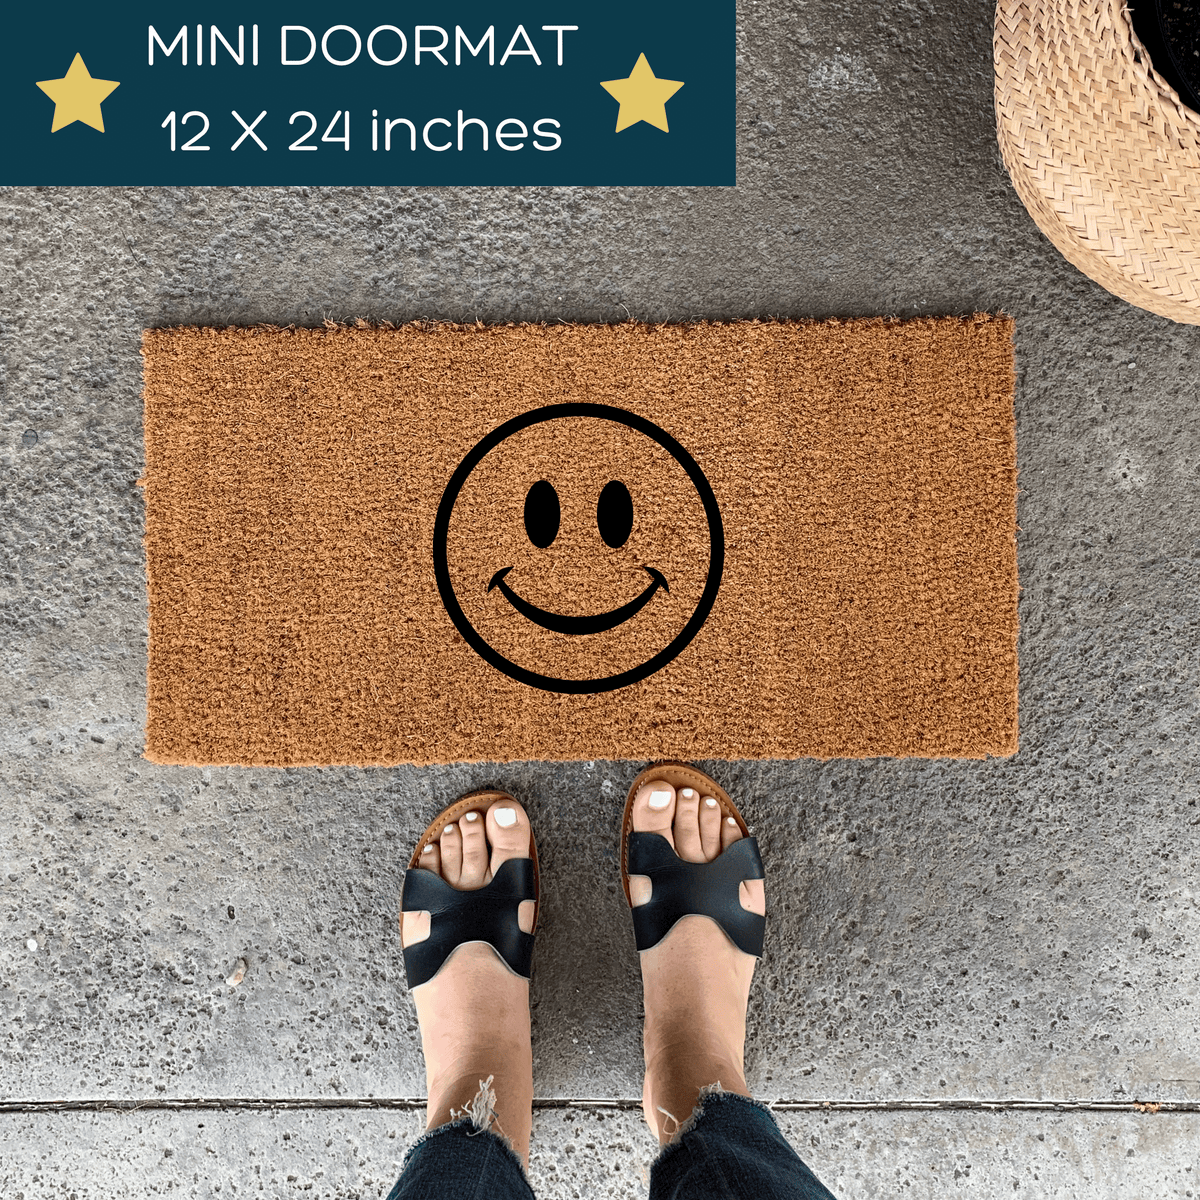  Doormats for Indoor Entrance Home Playhouse Doormat Come in and  Play Doormat Mini Doormat Small Doormat Small Welcome Mat Skinny Doormat  Kids Doormat Welcome Mat for Porch Home 16x24 inch 